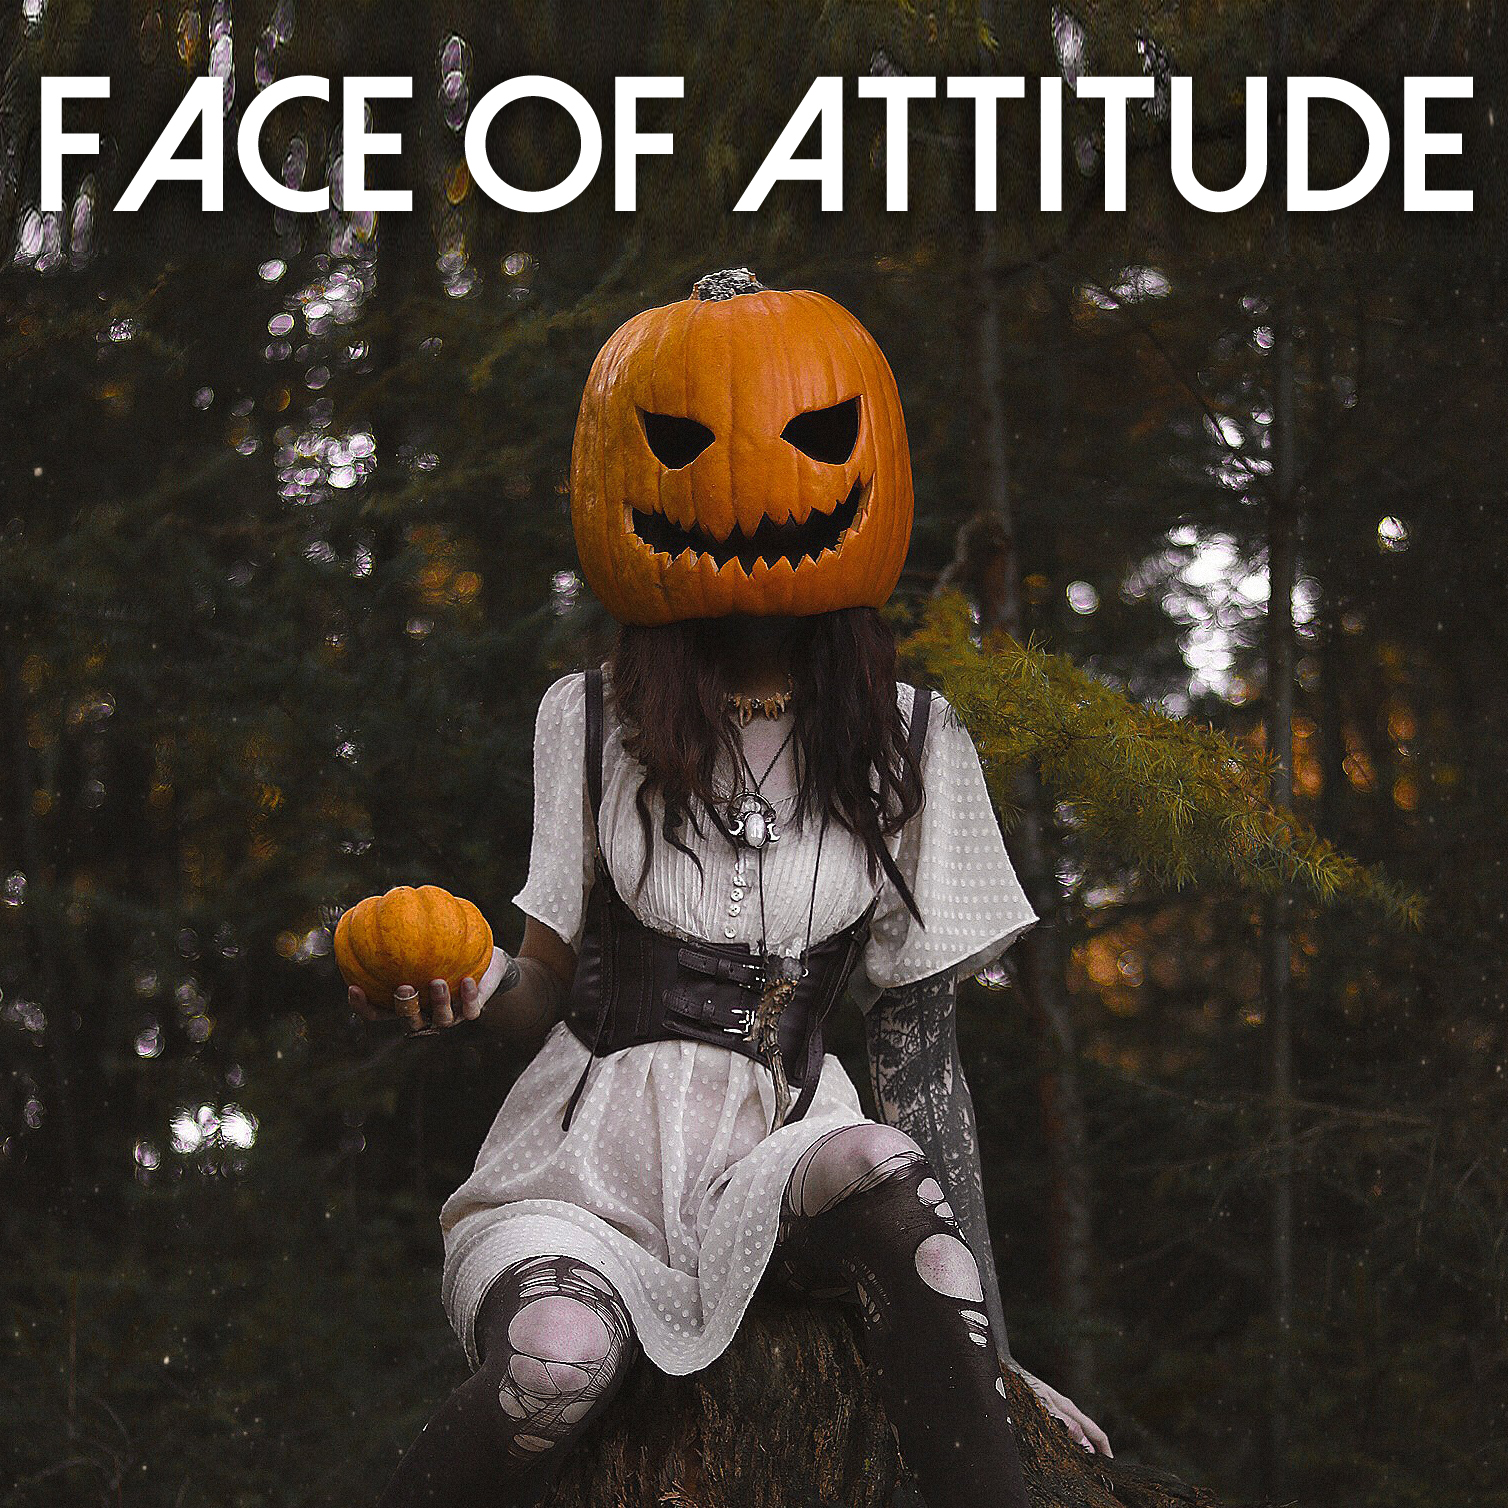 Face of Attitude